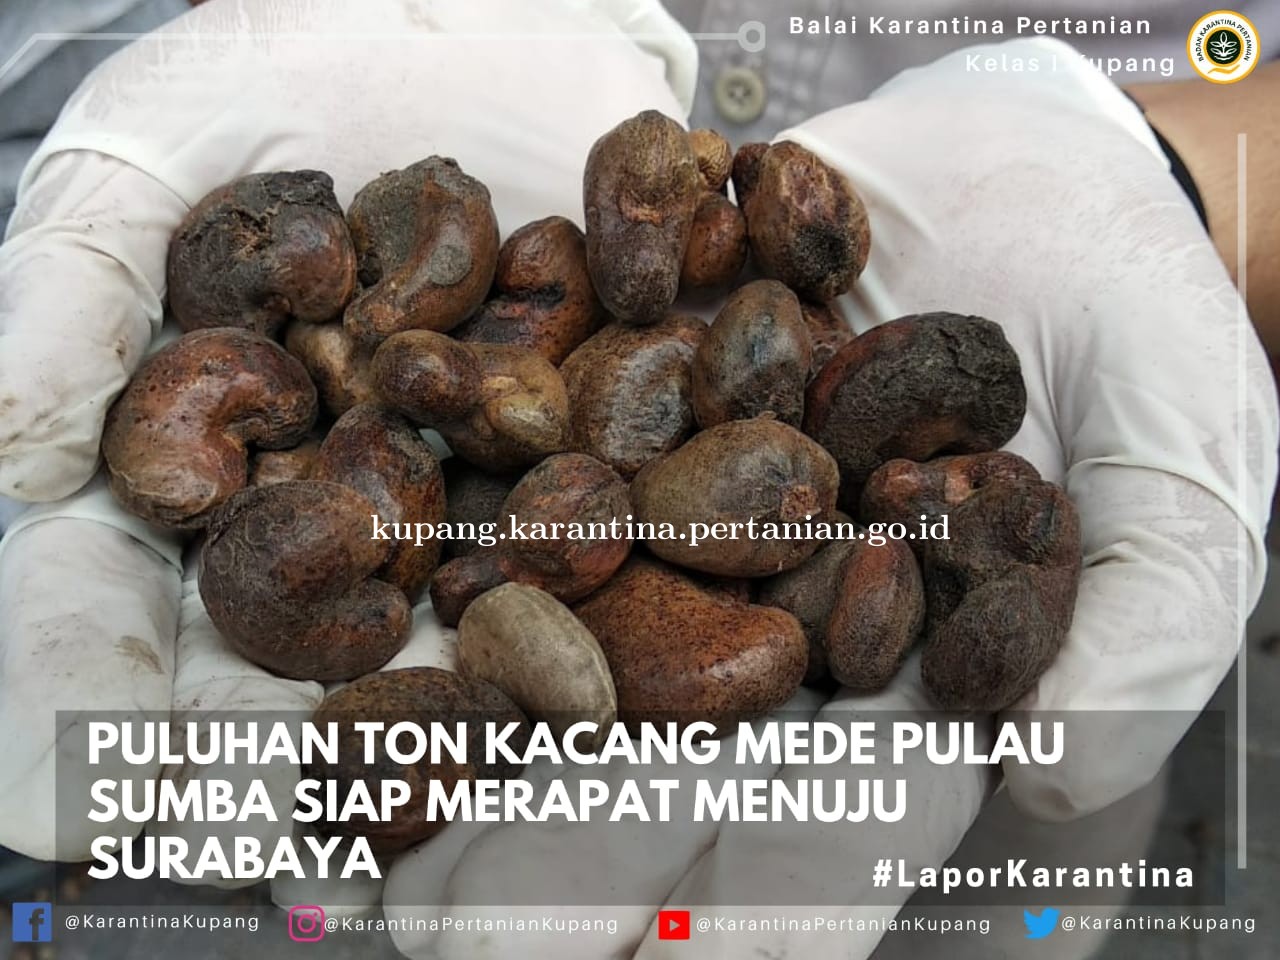 Kacang Mede Pulau Sumba Merapat Menuju Surabaya